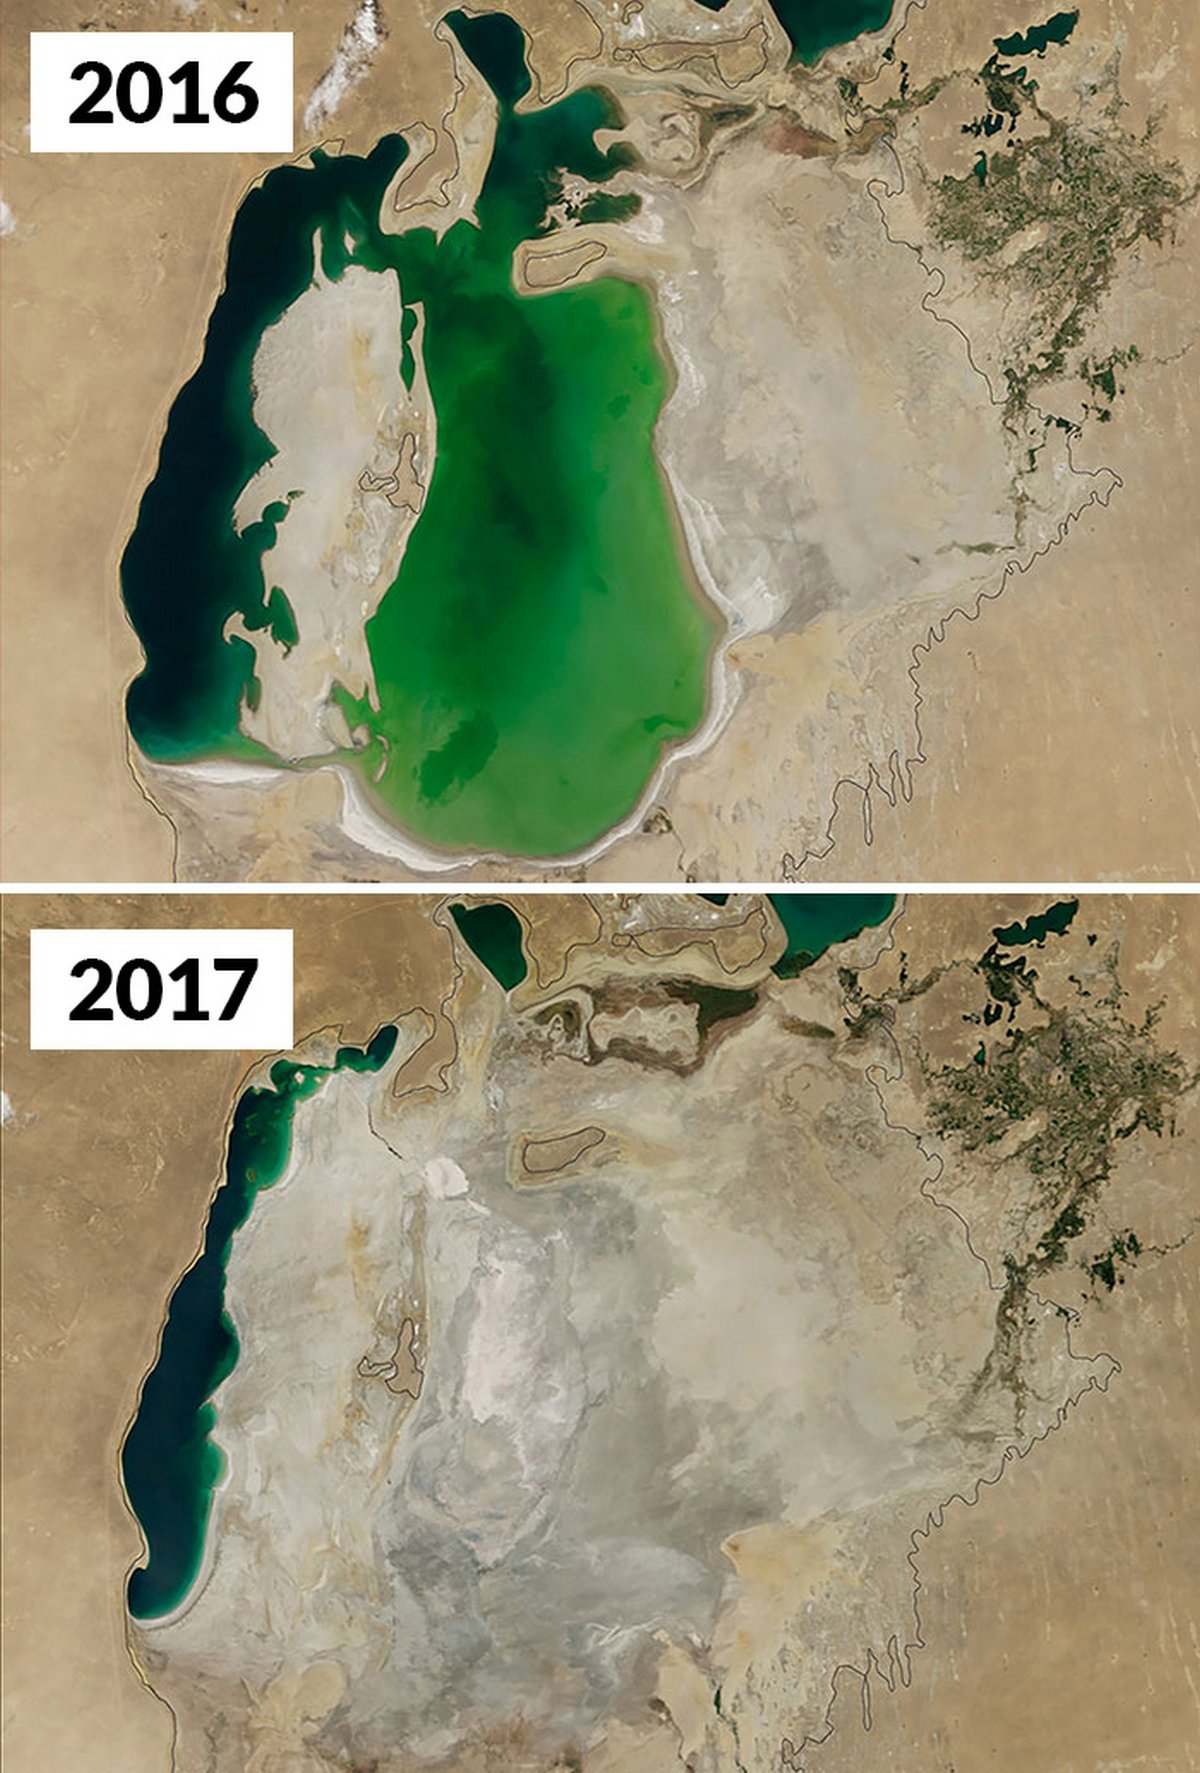 Ces images de la NASA montrent à quel point les changements climatiques sont réels